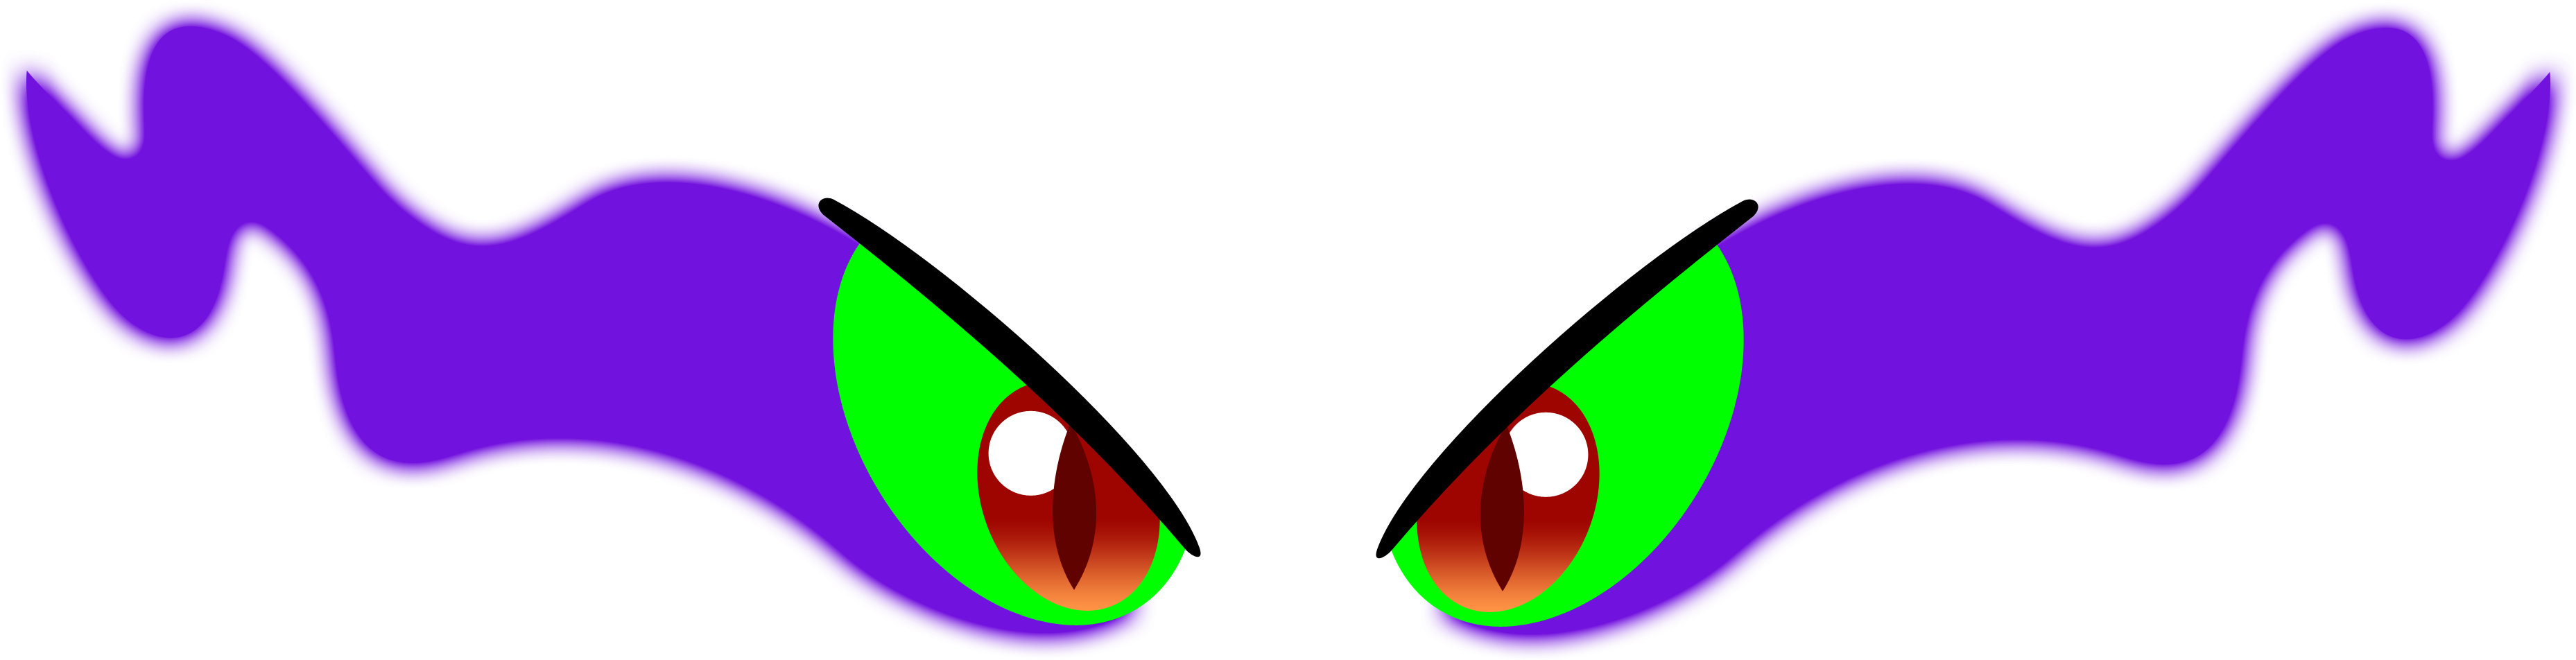 Evil Eye PNG Transparent Image